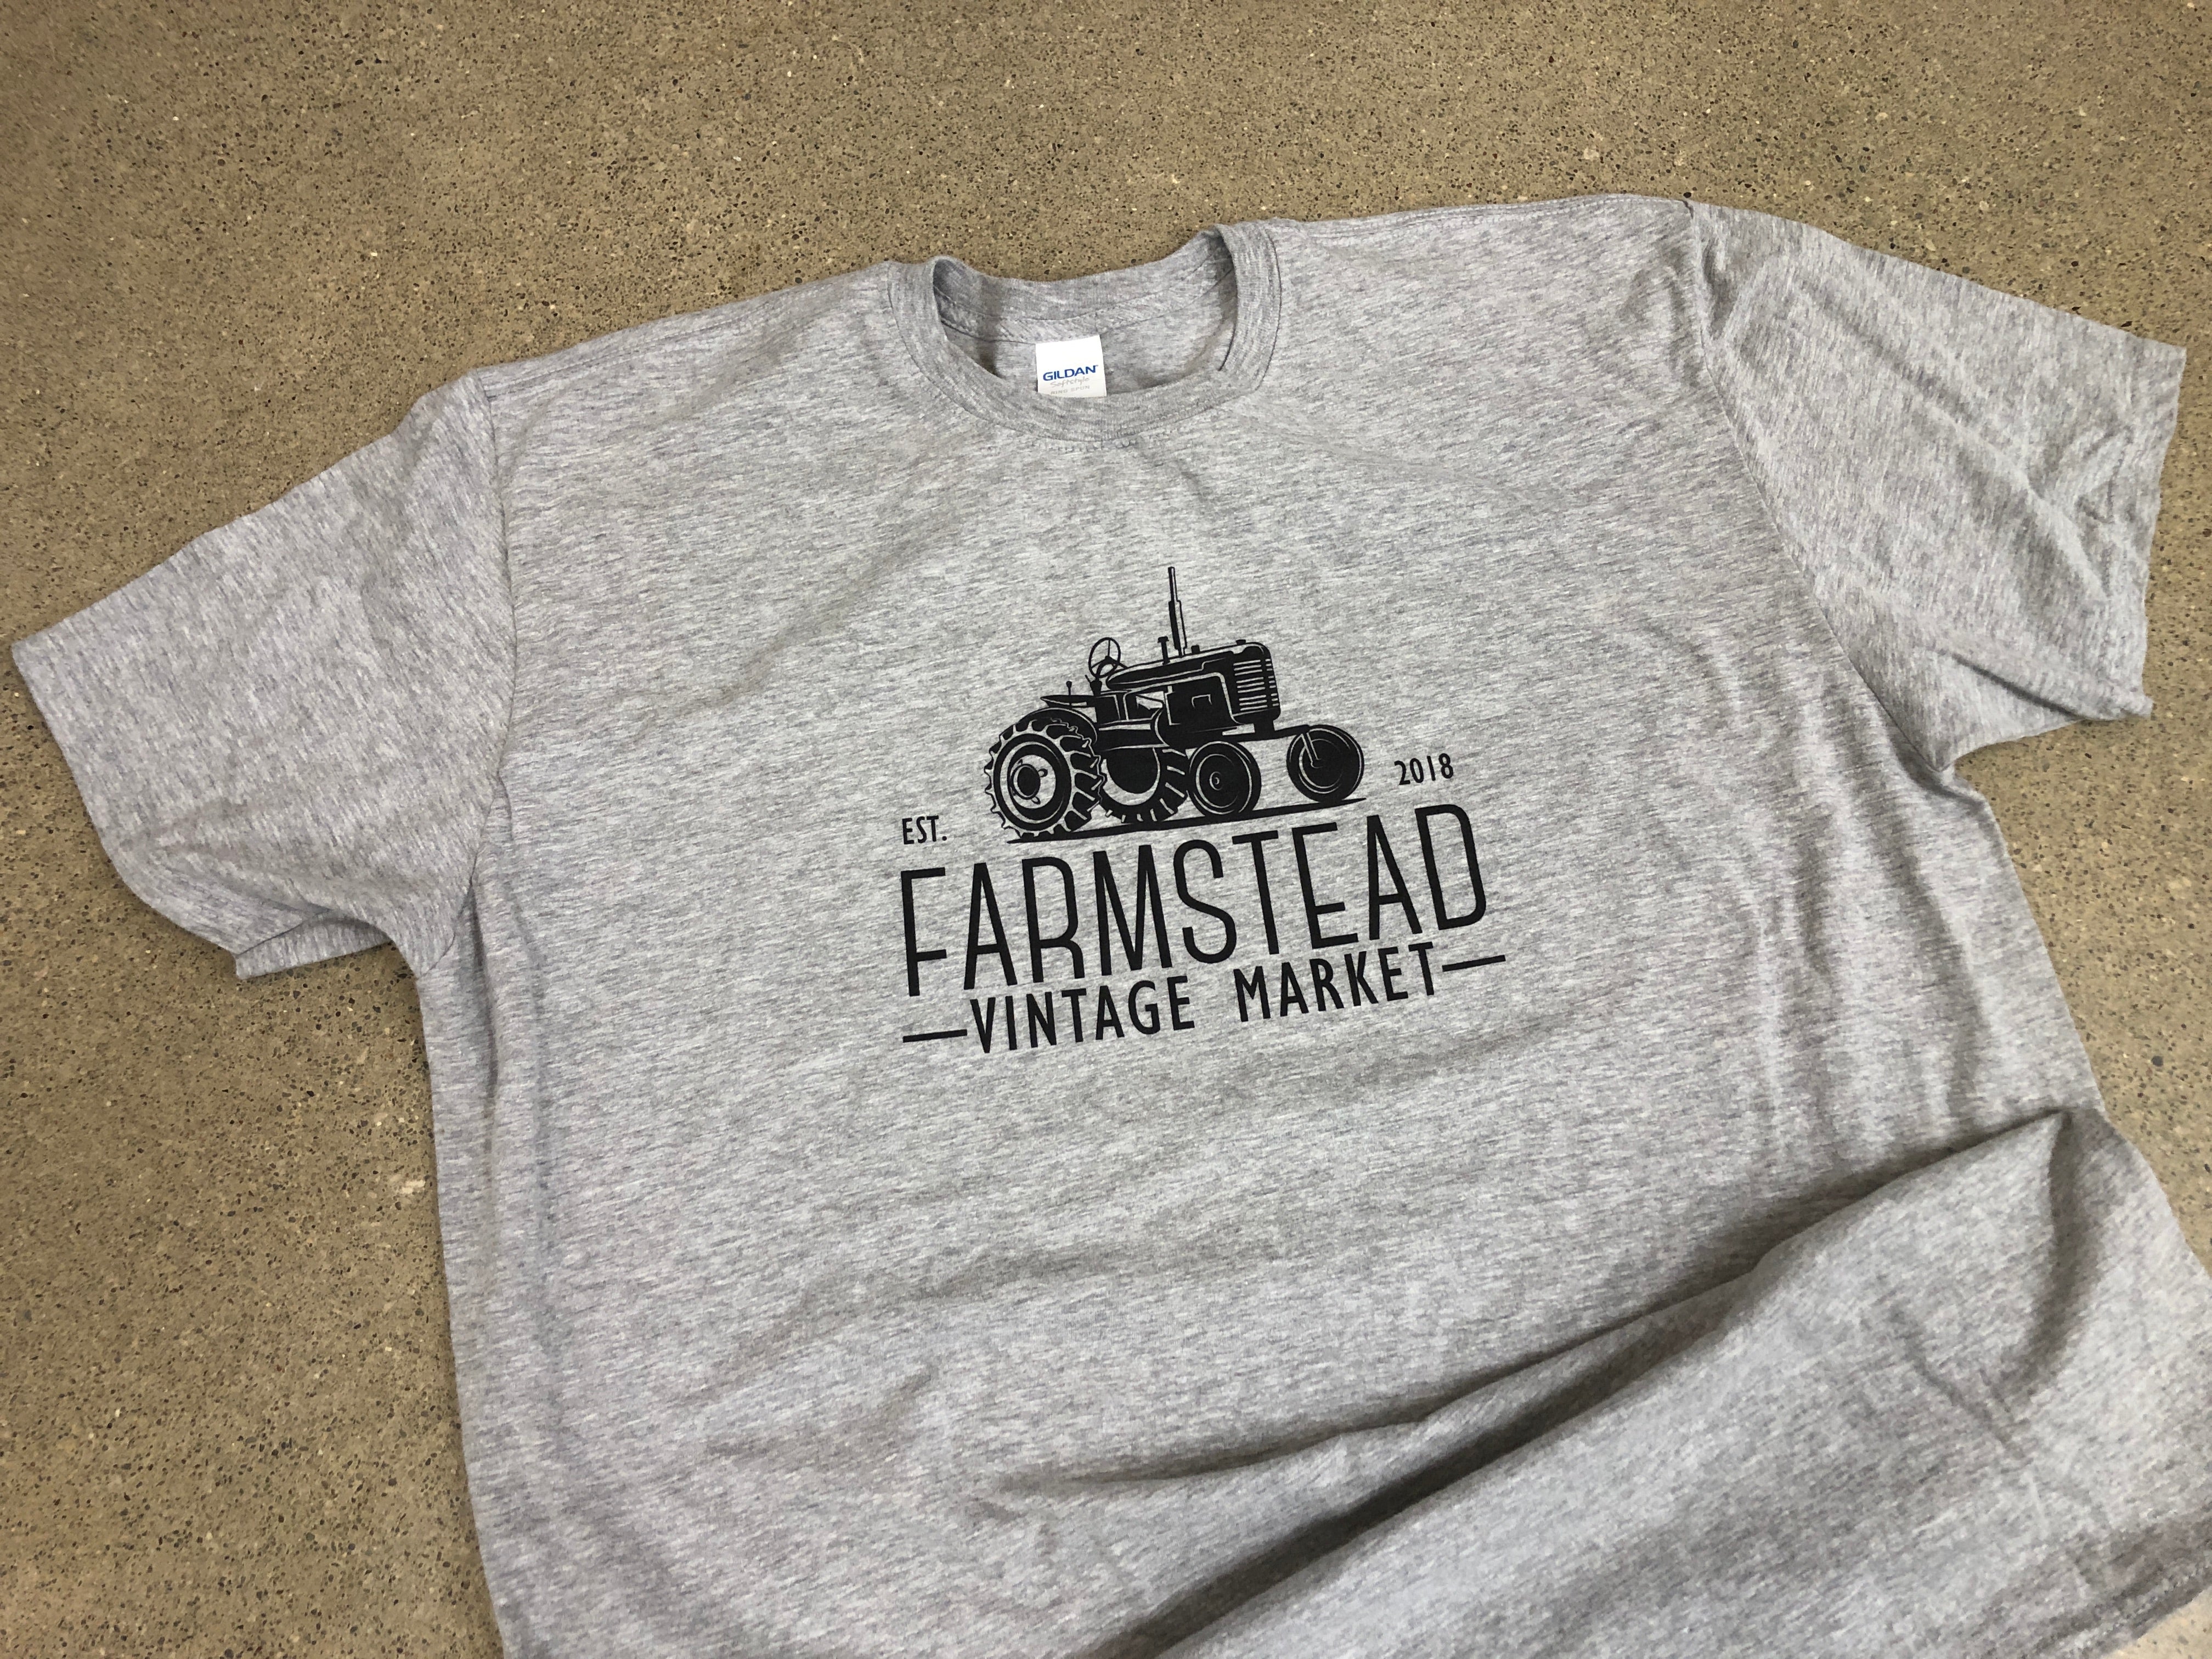 Farmstead Vintage Market Tshirts